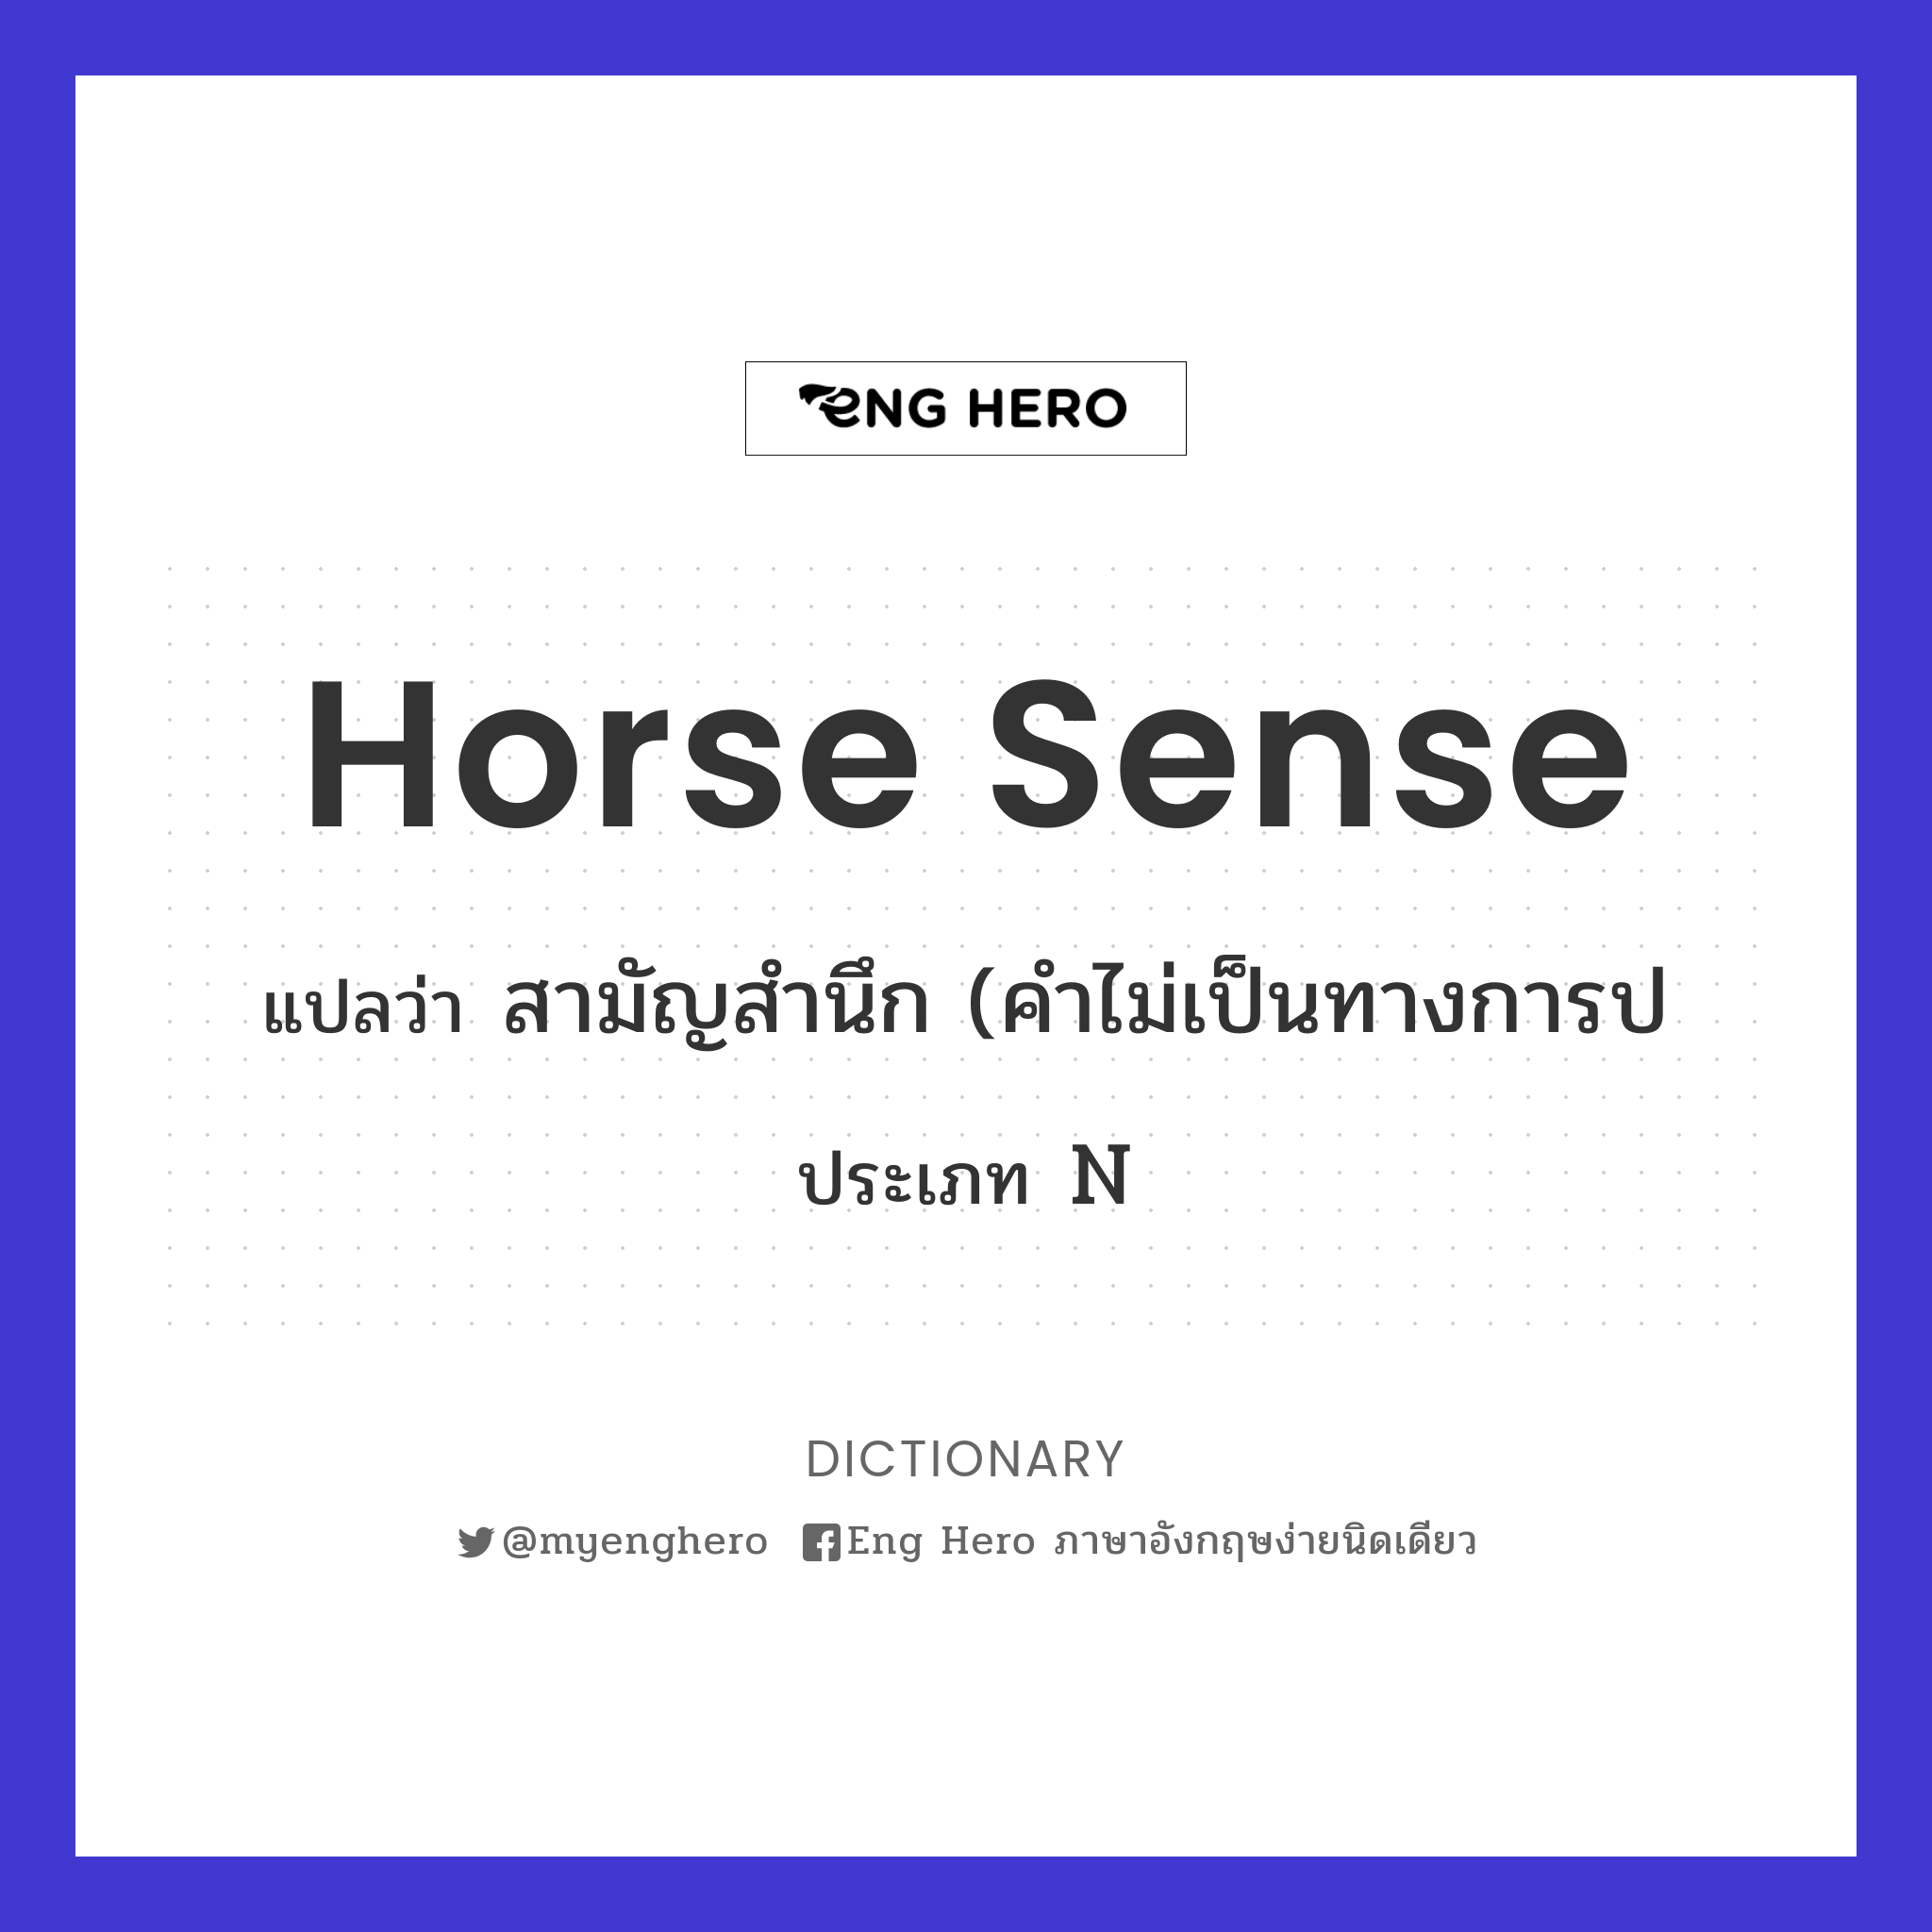 horse sense